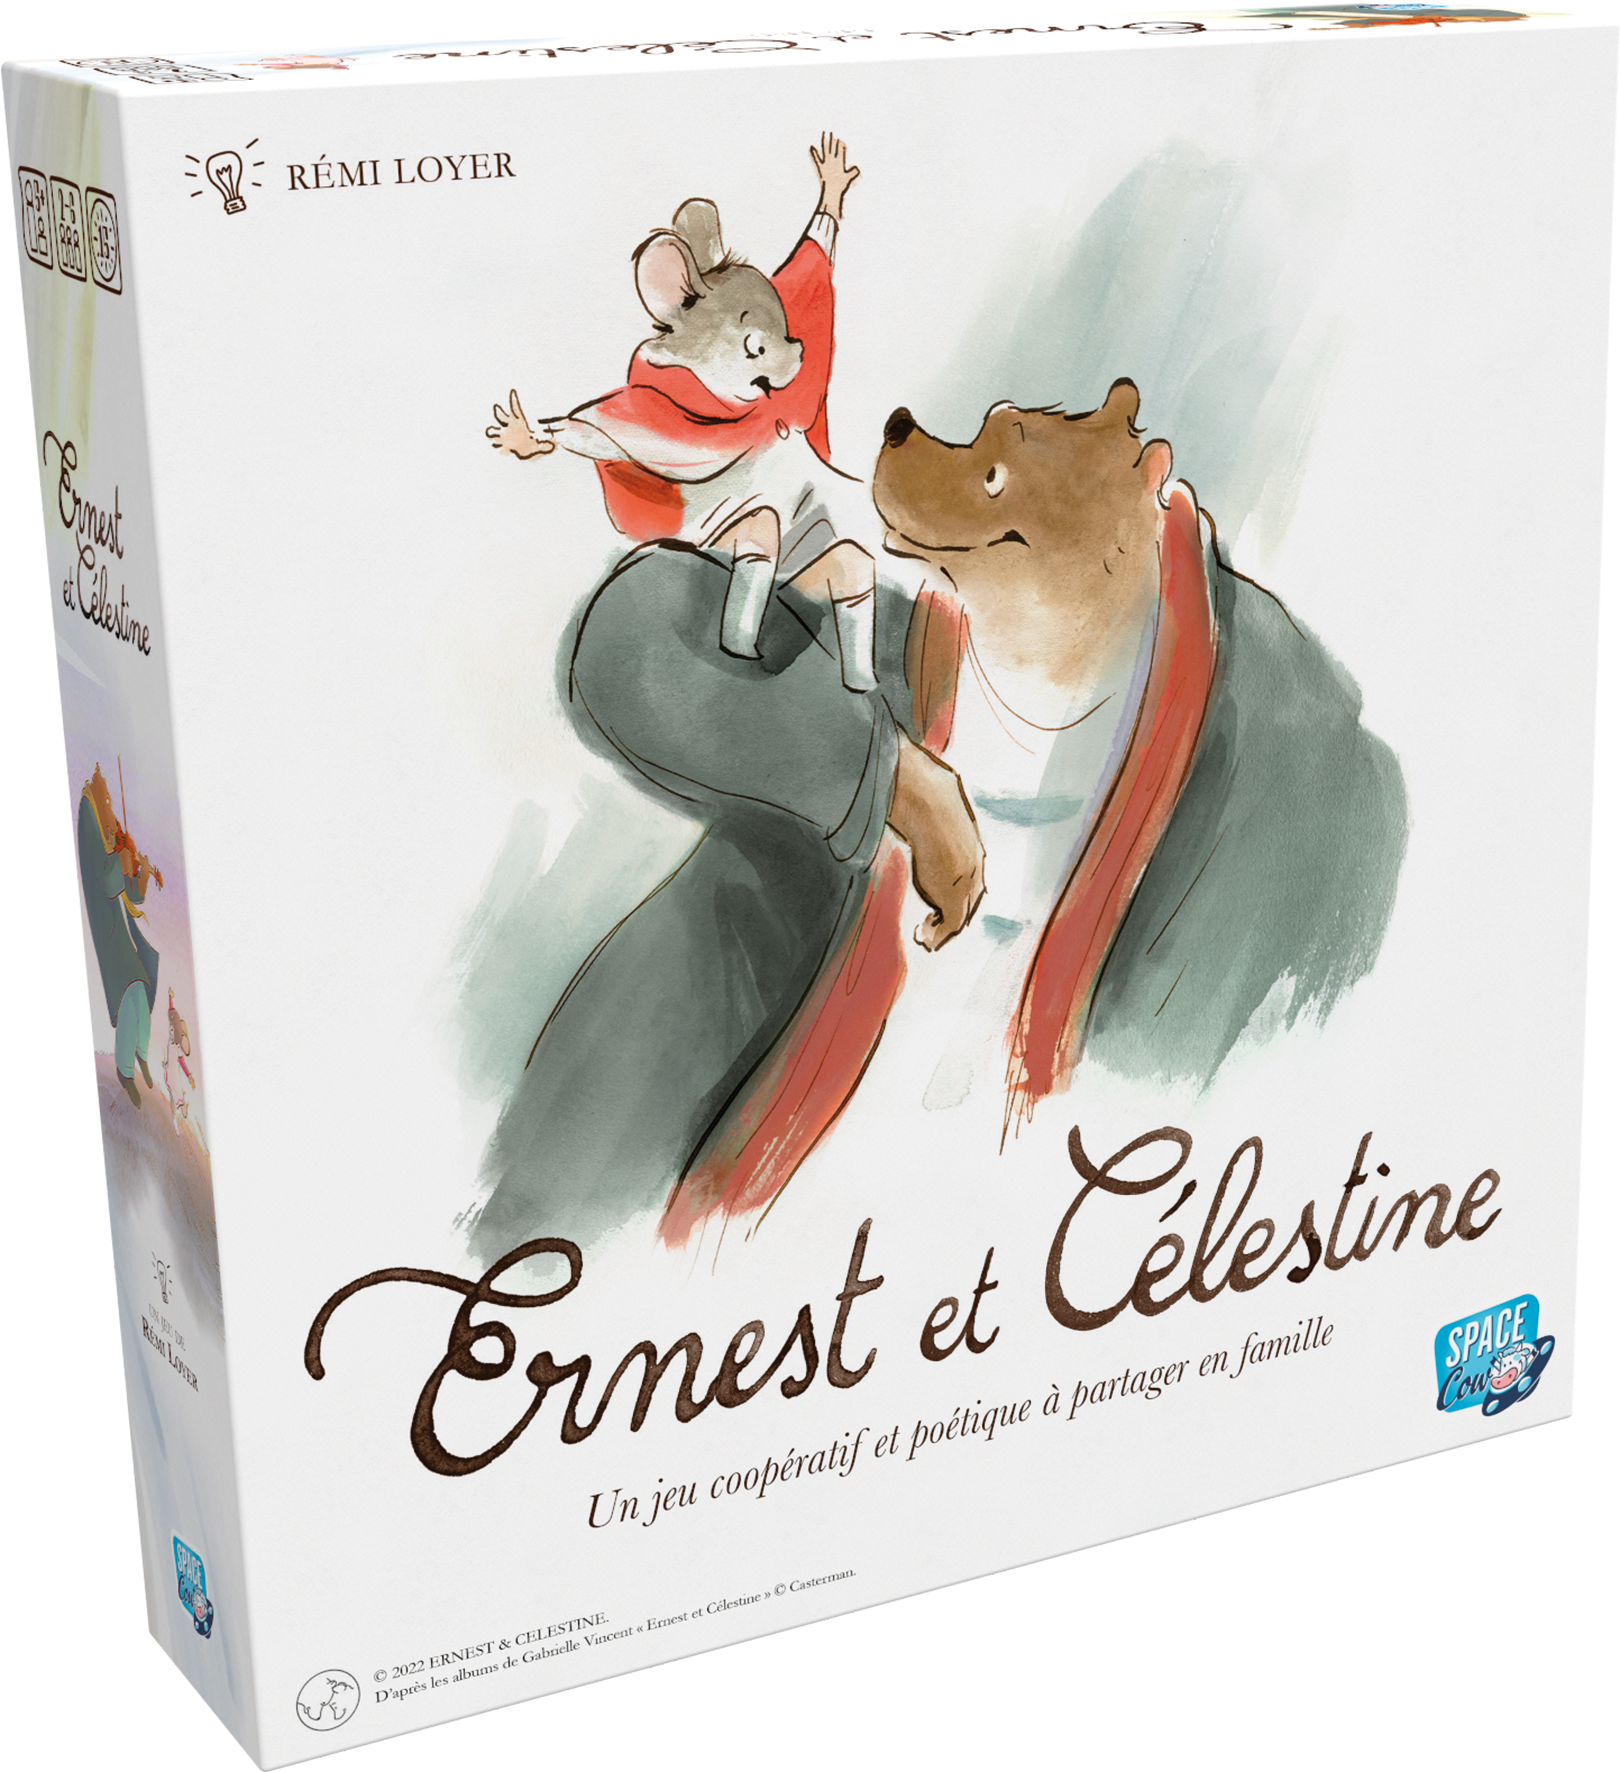 Découvrez ce jeu de société pour enfant inspiré de l'univers d'Ernest et Célestine